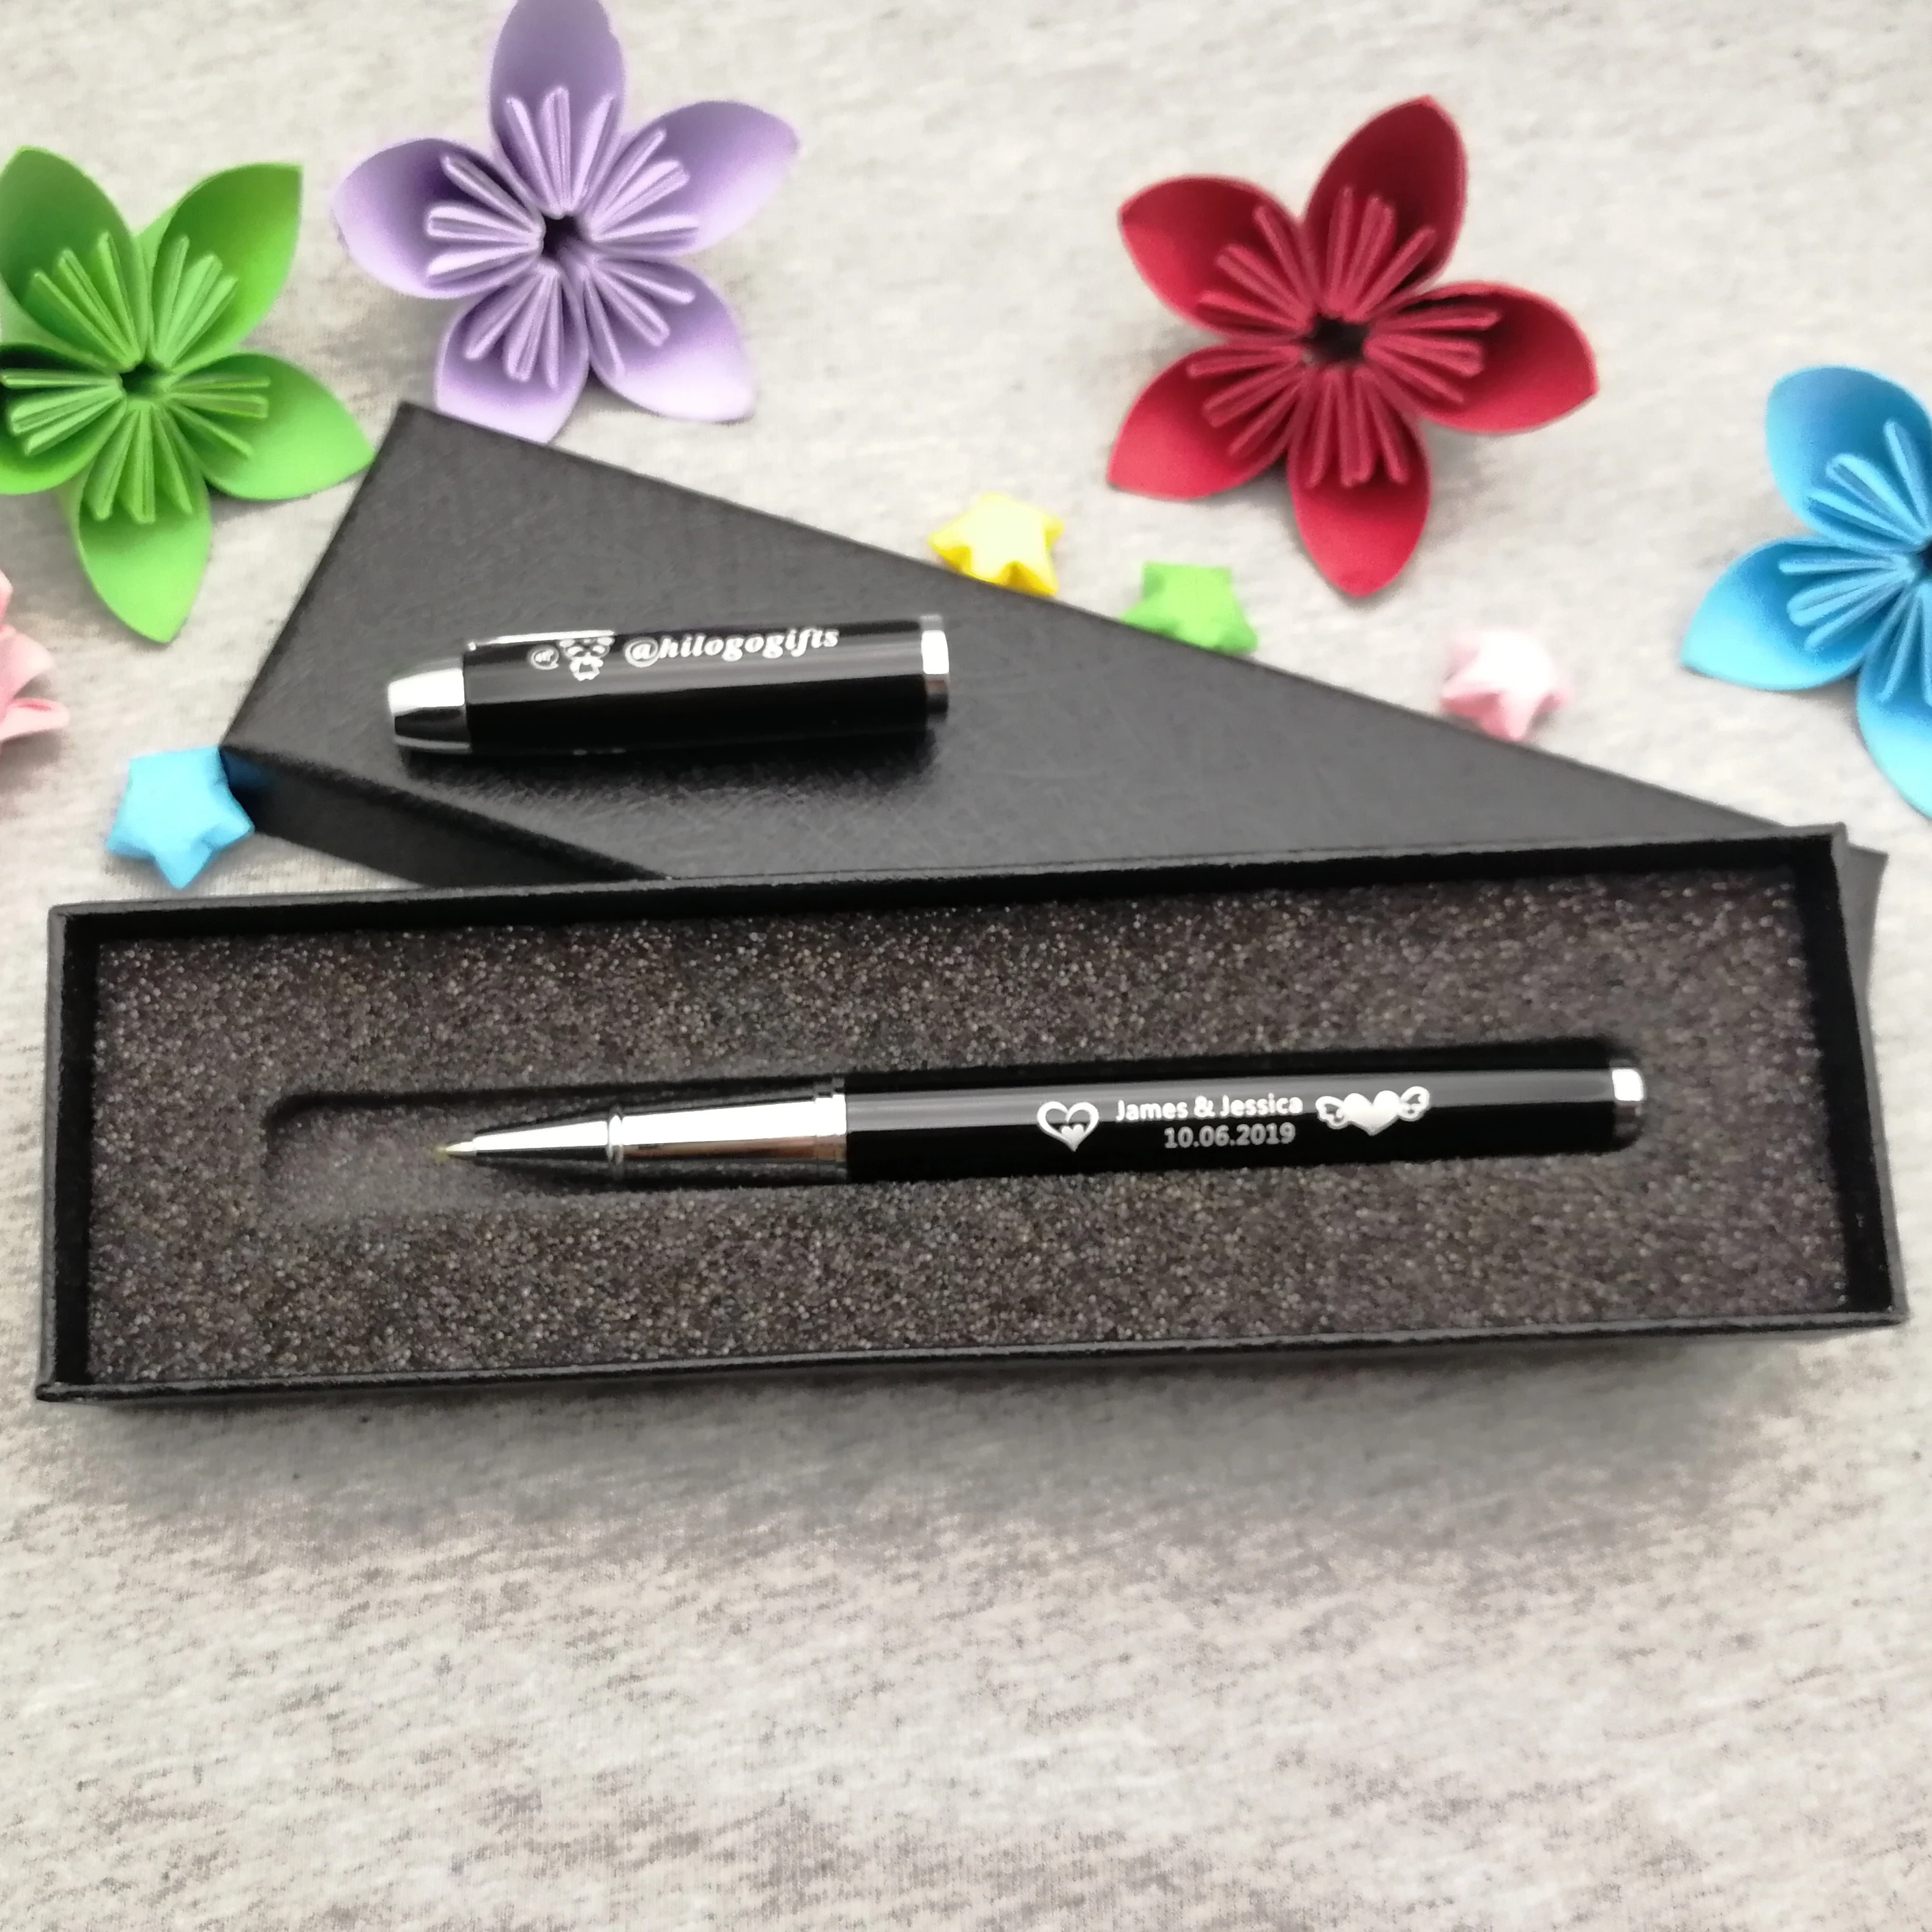 ¡Este es mi bolígrafo! Plumas de lujo, regalo de cumpleaños único personalizado gratis con su texto de nombre, nuevo regalo de padrino de boda, bolígrafo de GEL de 5 colores